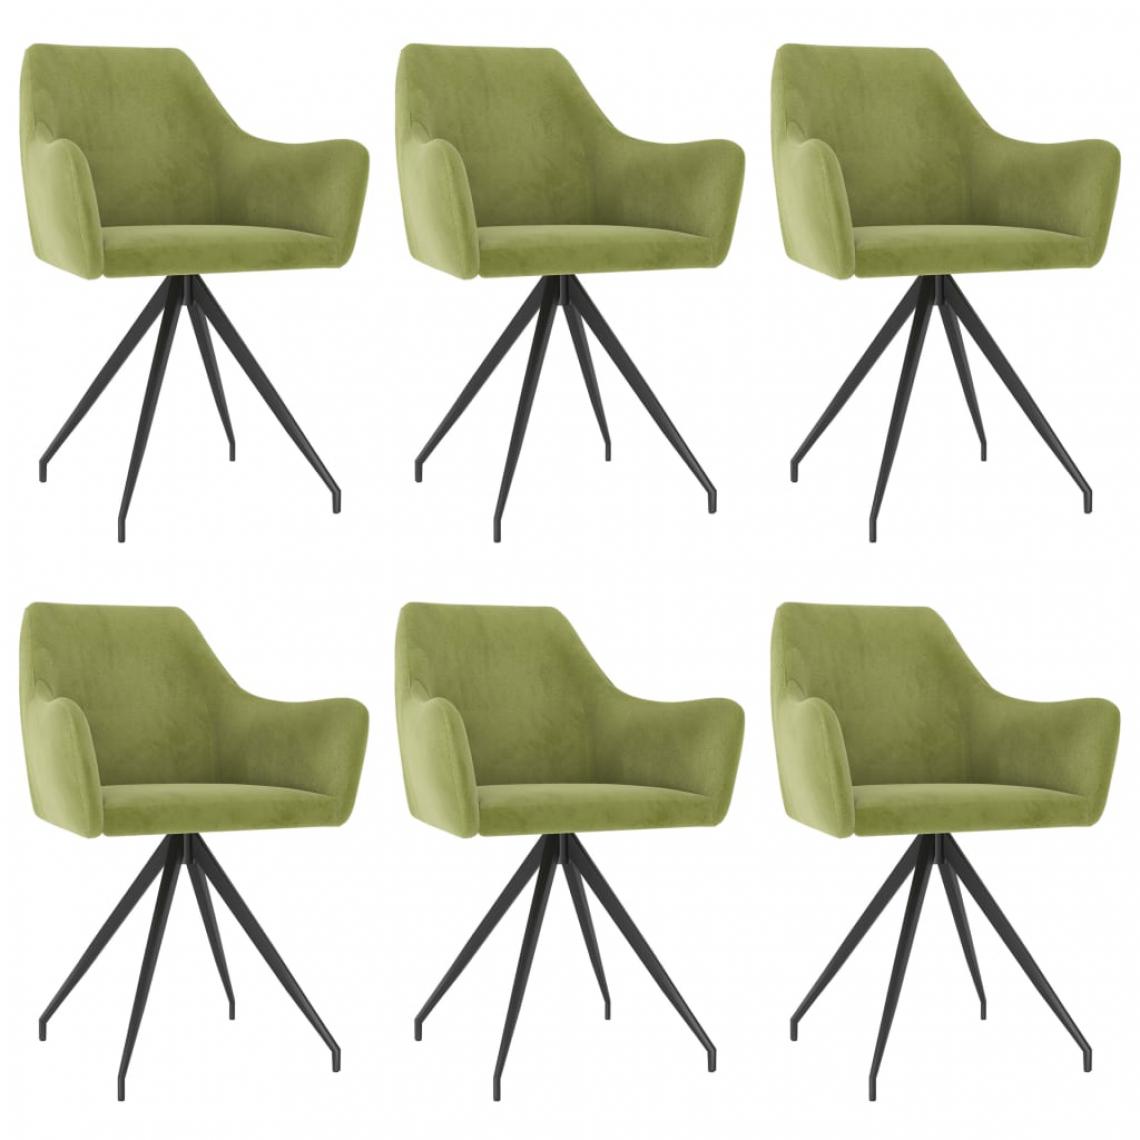 Icaverne - Chic Fauteuils et chaises serie Ljubljana Chaises de salle à manger 6 pcs Vert clair Velours - Chaises